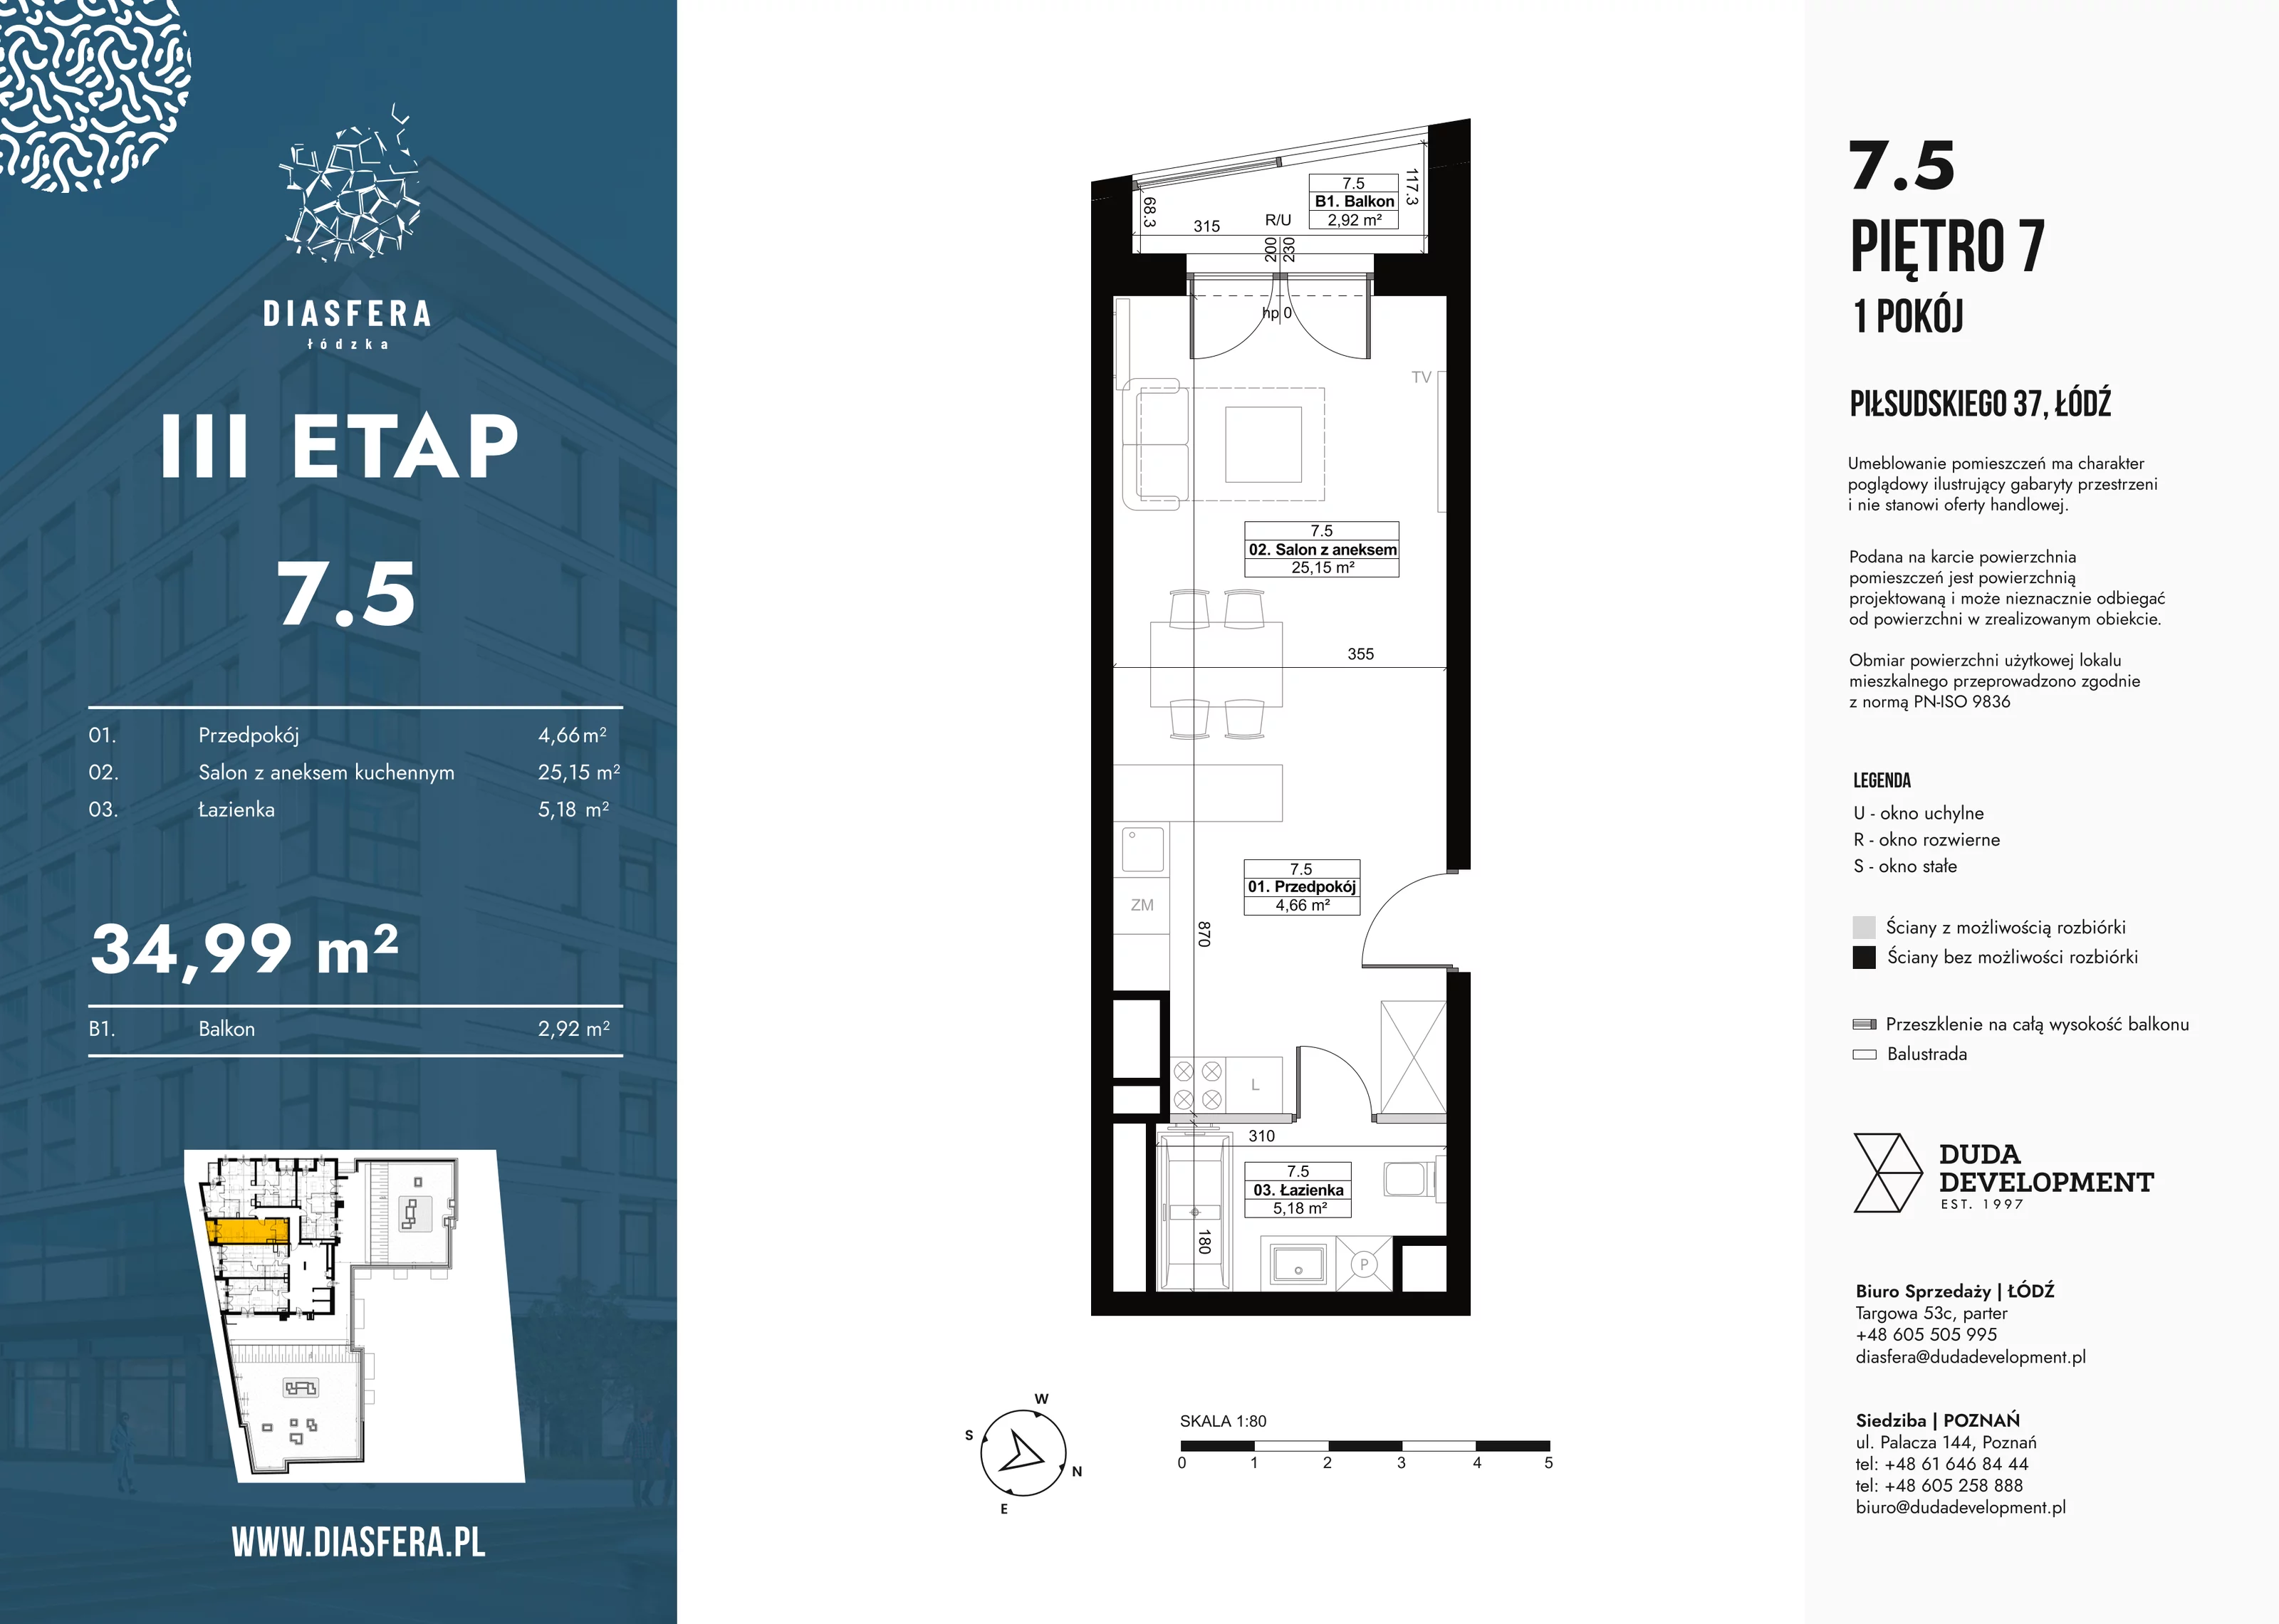 Mieszkanie 34,99 m², piętro 7, oferta nr 7_5, Diasfera III, Łódź, Śródmieście, al. Piłsudskiego 37